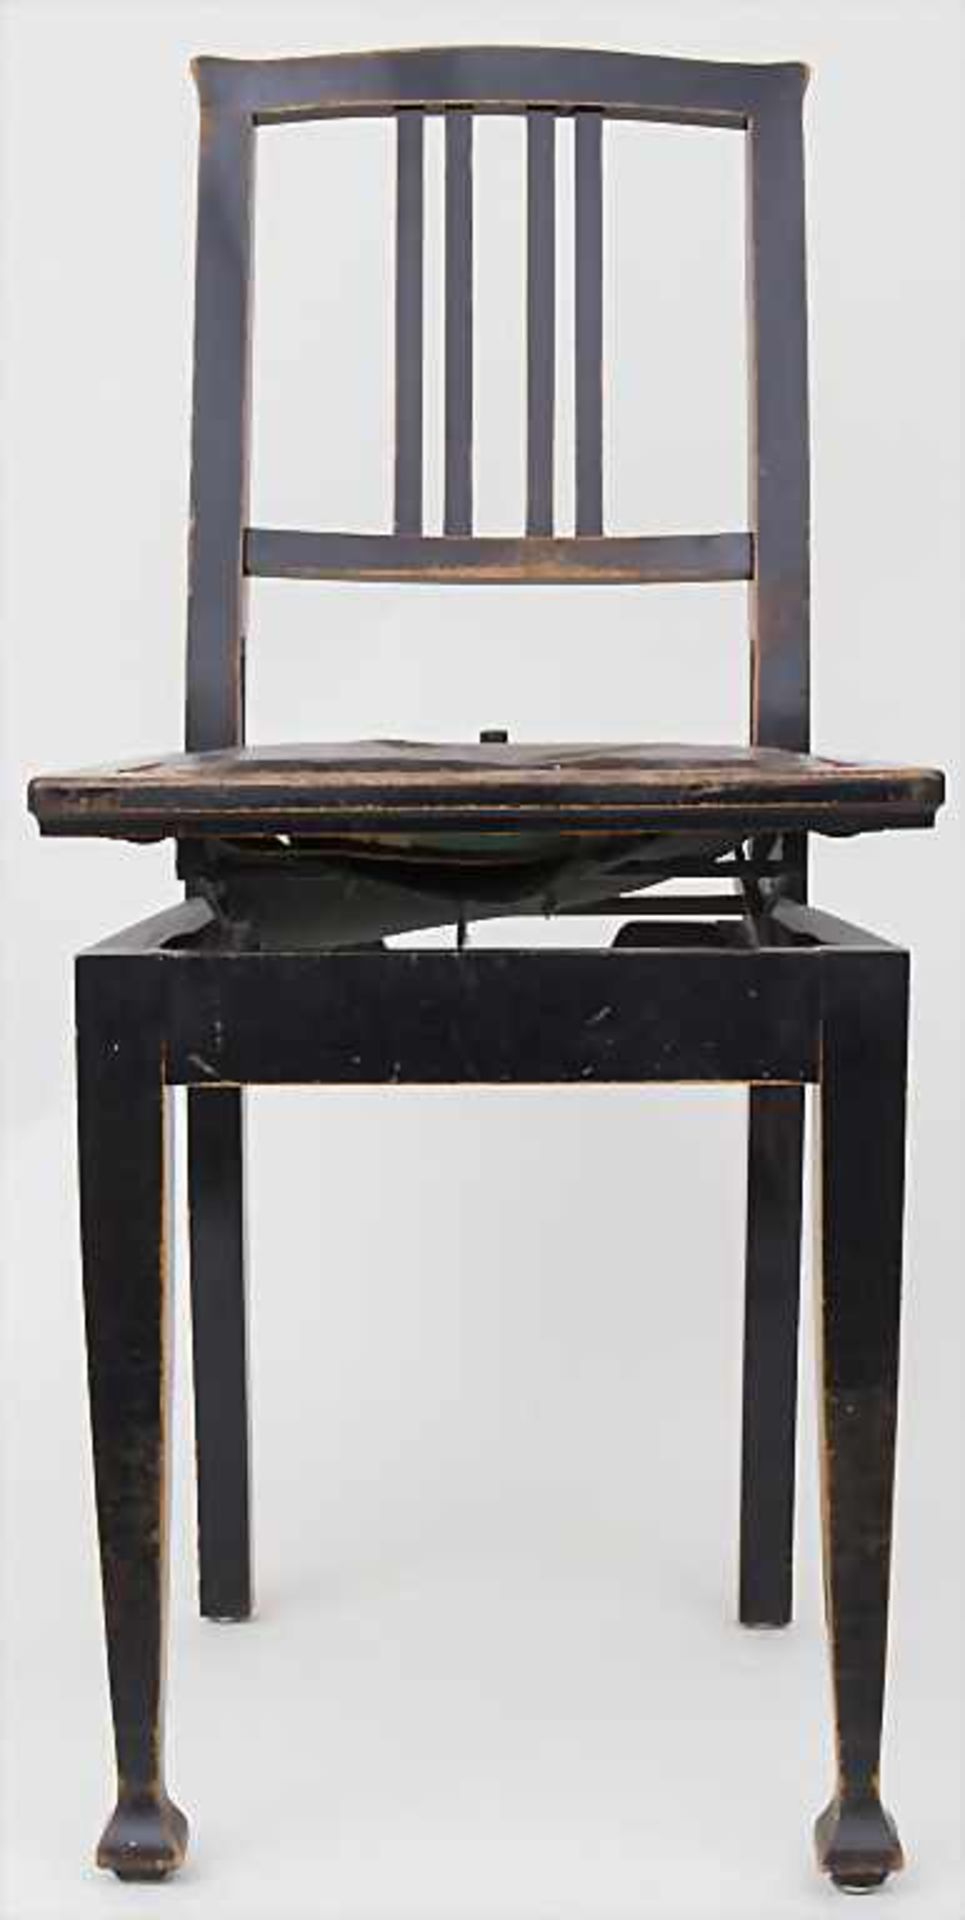 Klavierstuhl / A piano chair, um 1900Material: Holz, ebonisiert, höhenverstellbare Sitzfläche mit